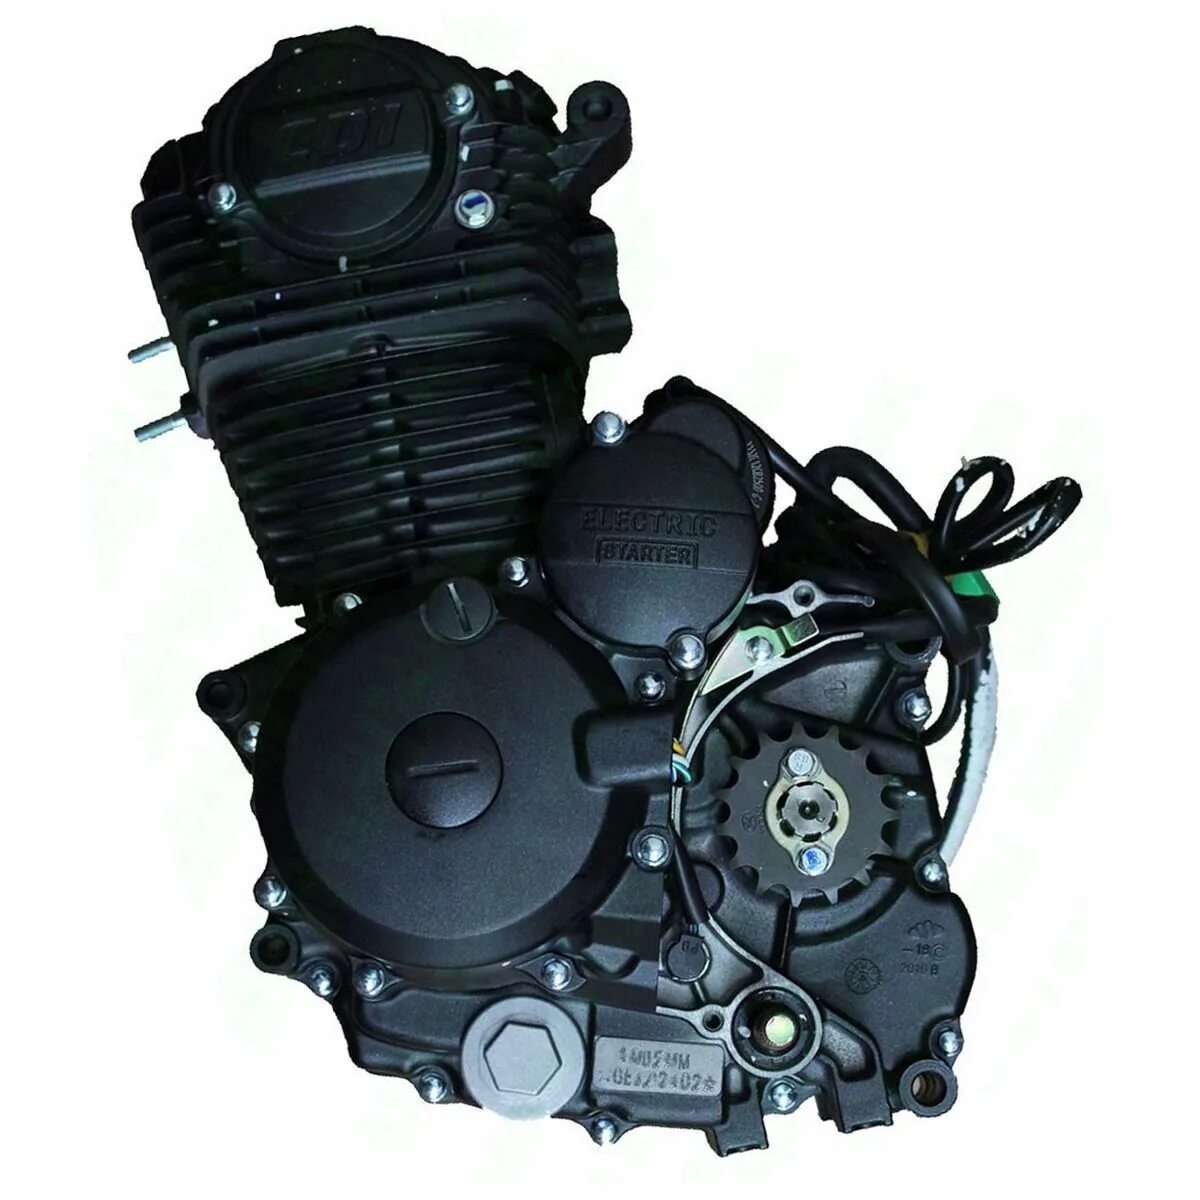 Мотор 250 кубов купить. Зонгшен 150 кубов мотор. Zongshen 250cc. Двигатель Zongshen 250 кубов. Двигатель Зонгшен 250 кубов для мотоцикла.